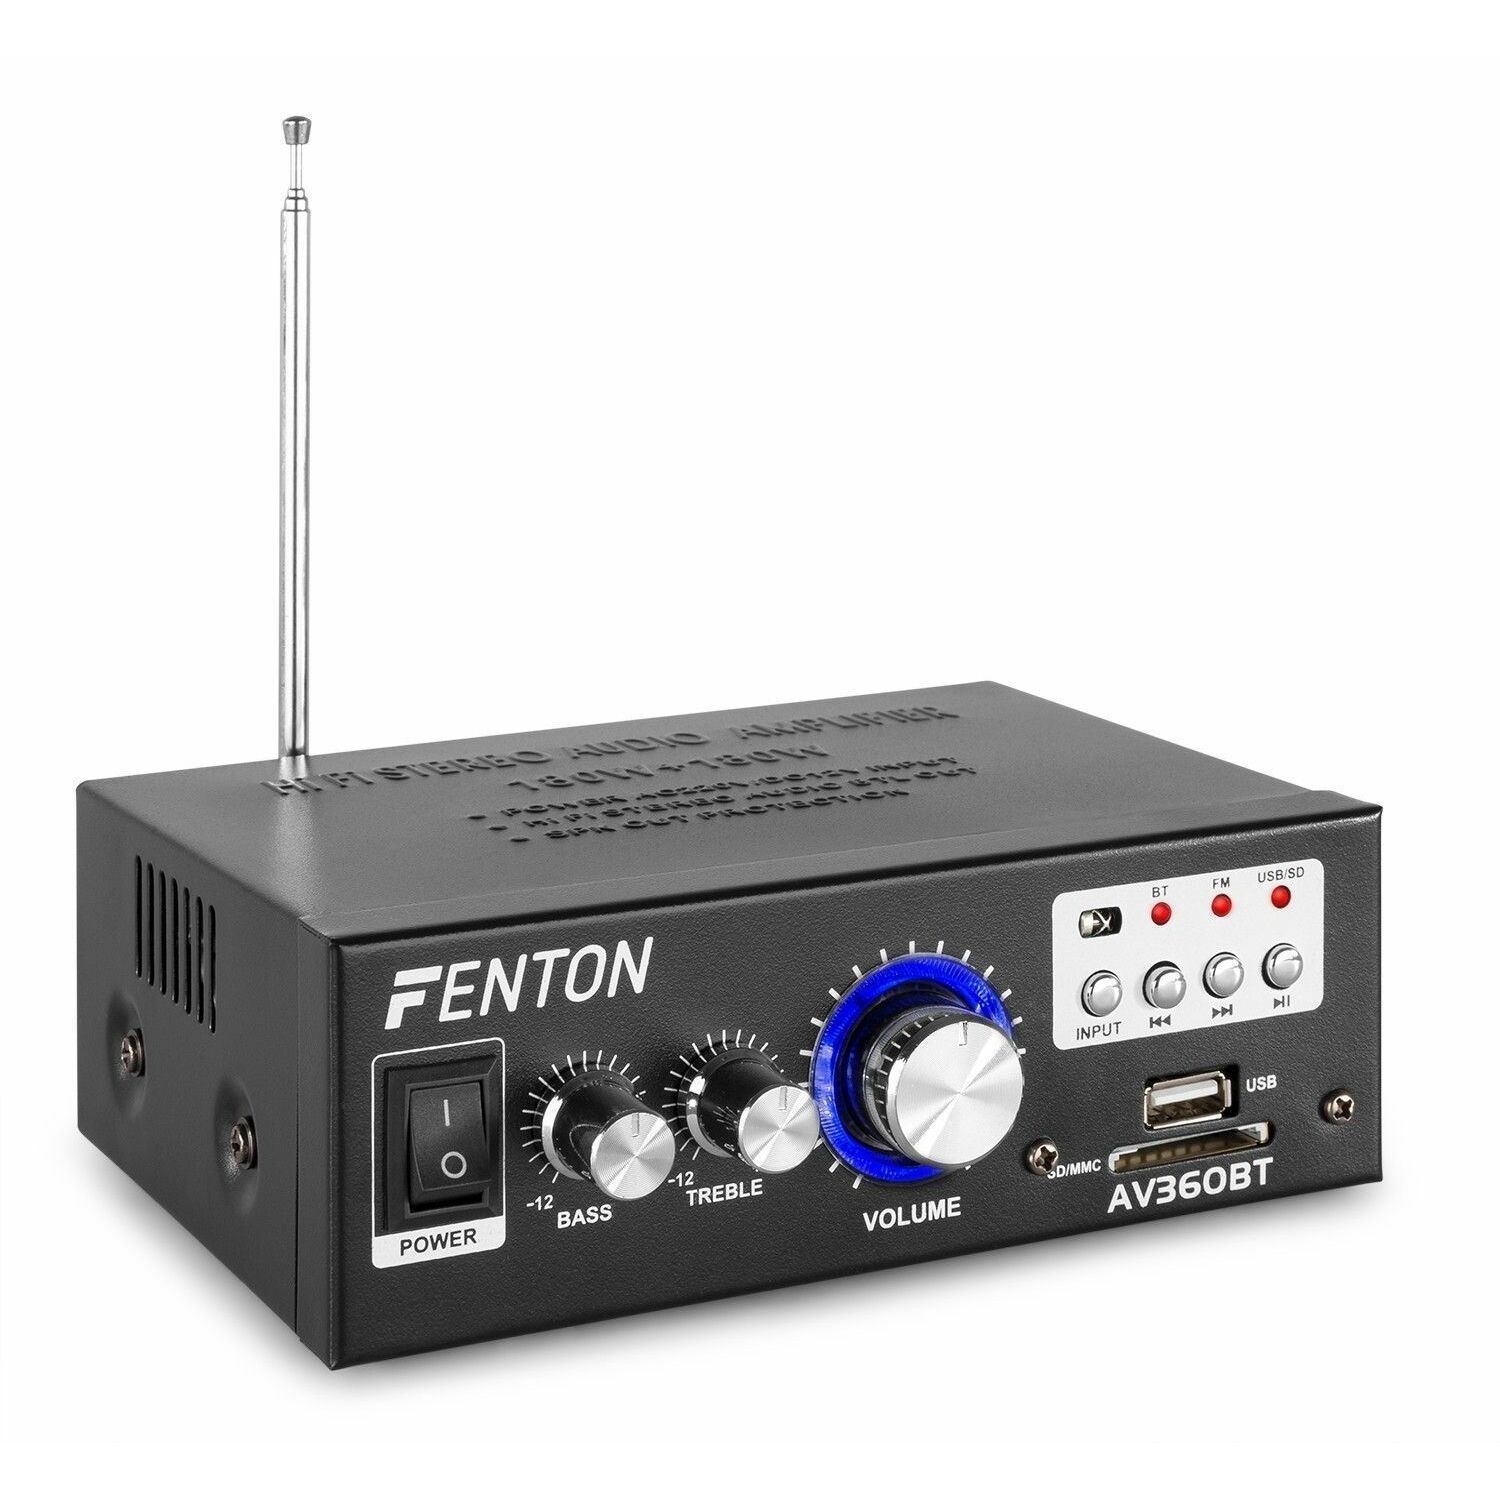 Fenton fpa600 amplificateur sono bluetooth - lecteur usb sd mp3 - 2 x 300w  - télécommande - argent VONYX Pas Cher 